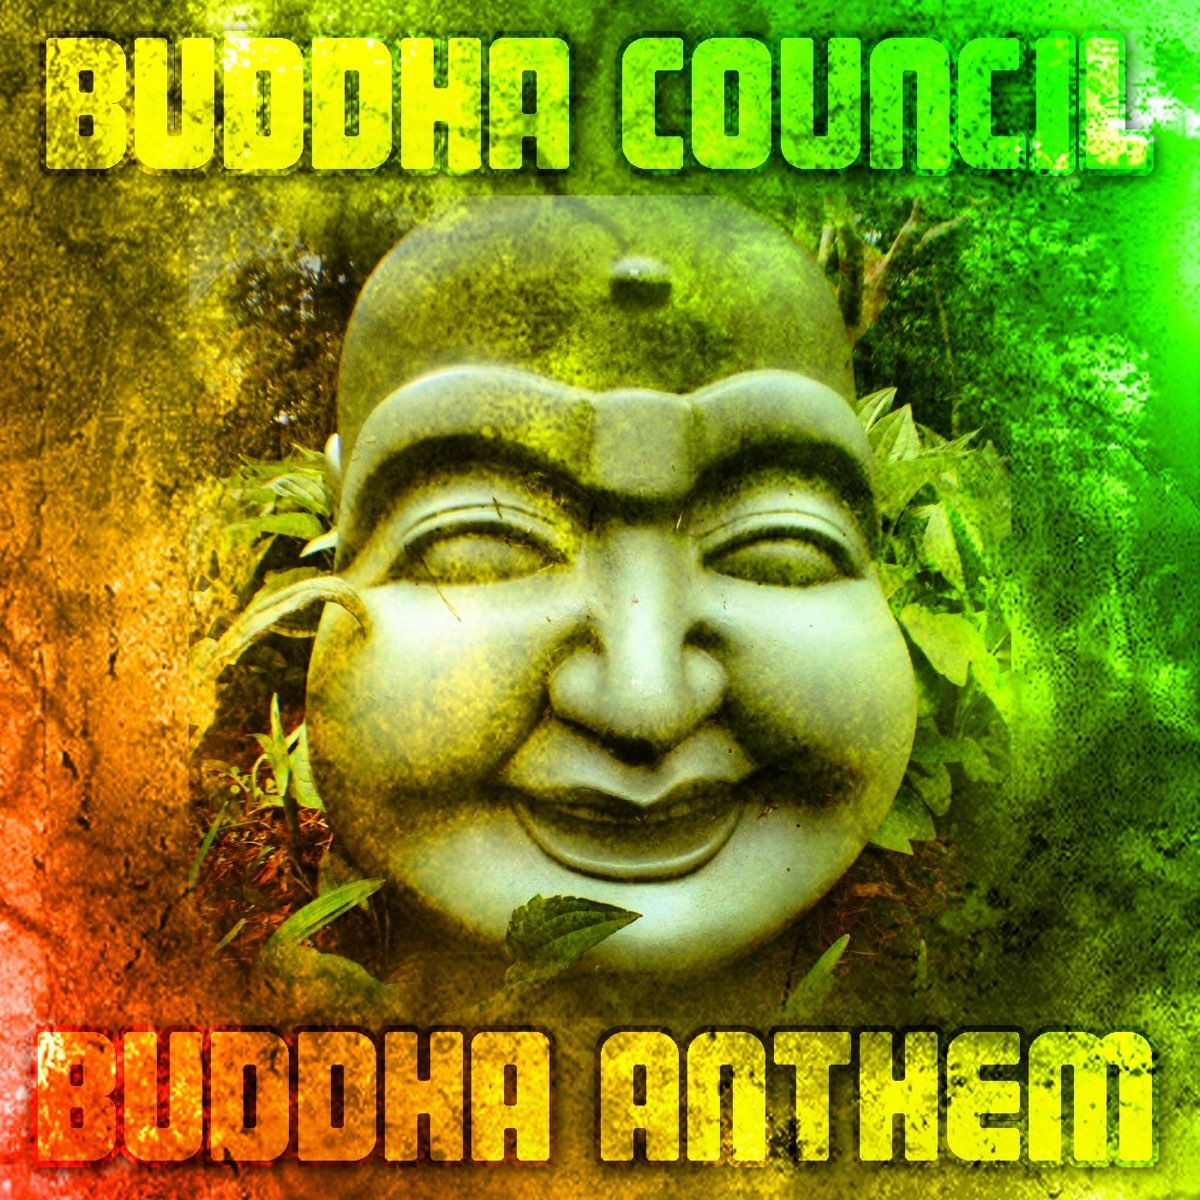 Будда слушает. Смеющийся Будда музыкальный. Альбом Будды бандит обложка. Олджи Будда песни. Будда слушает аудиокнига